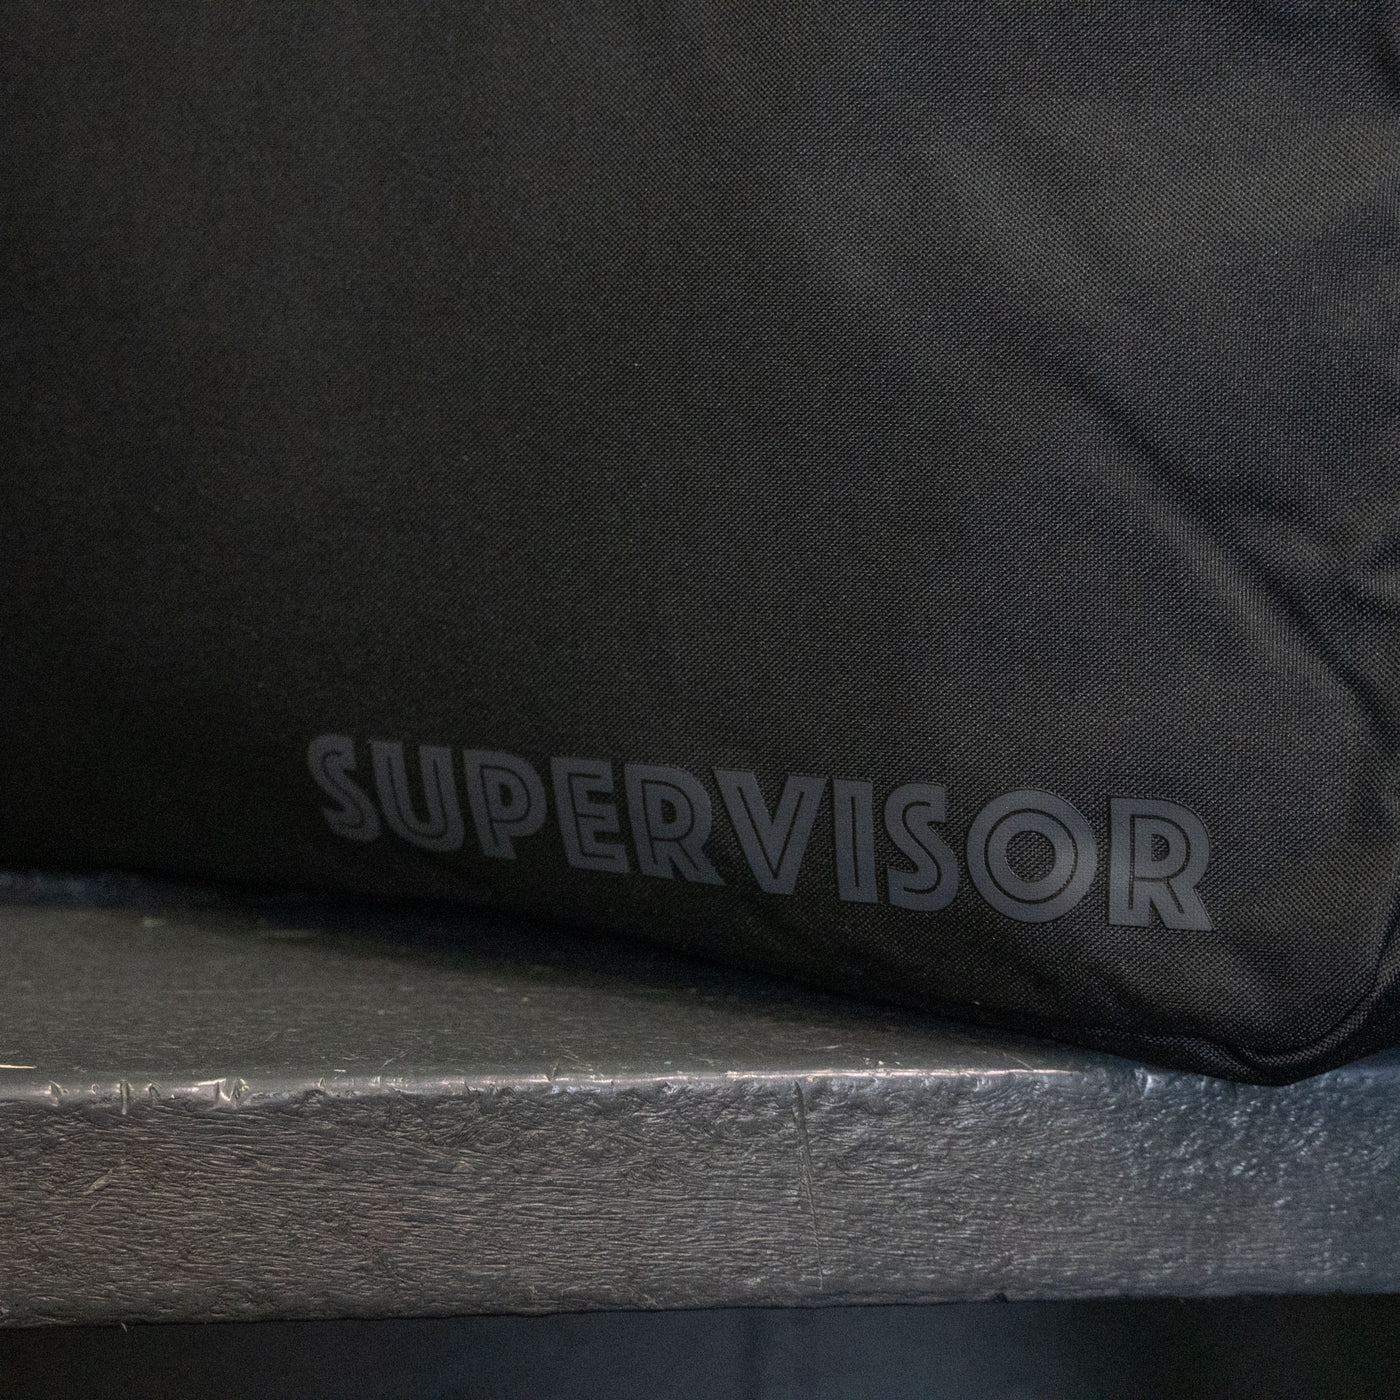 Zebrasclub Supervisor cooler bag logo